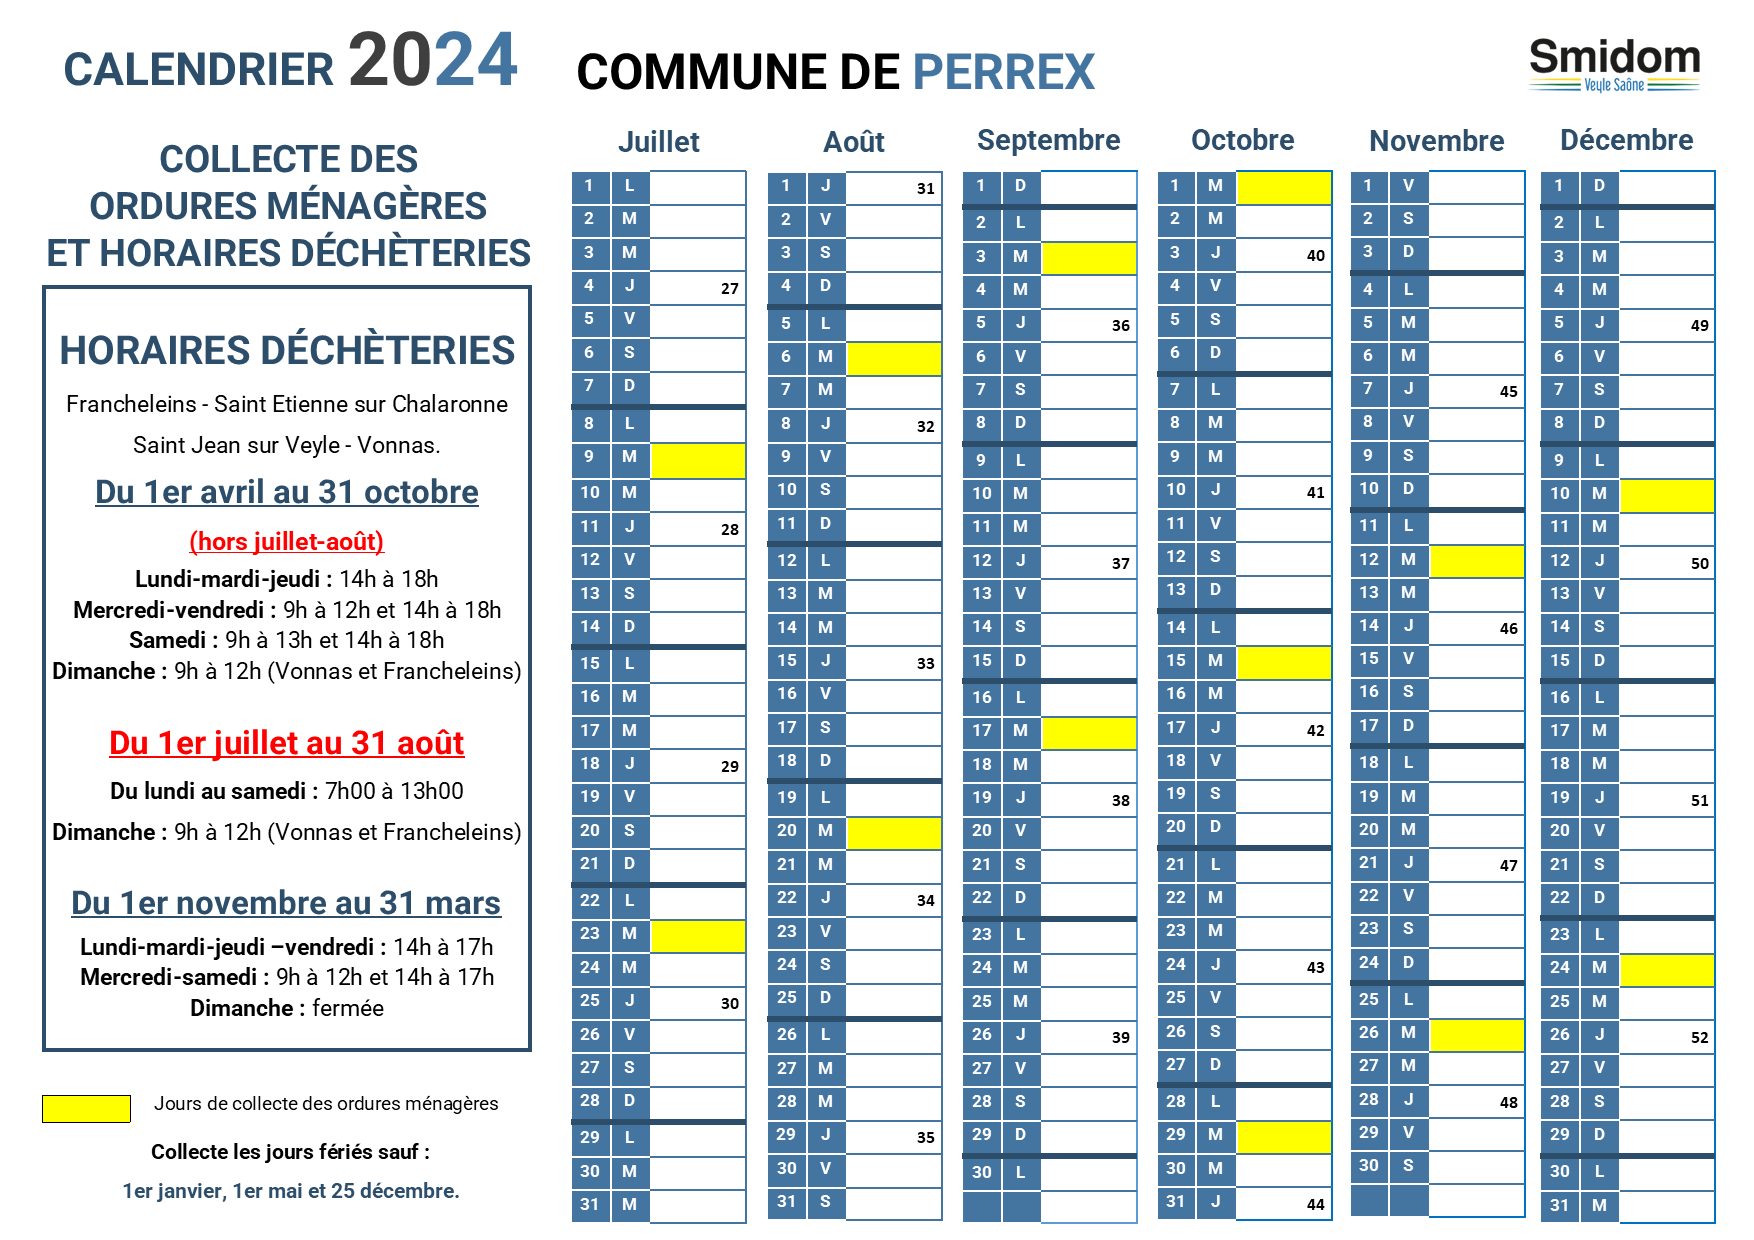 PERREX - Calendrier 2024 - 2.png